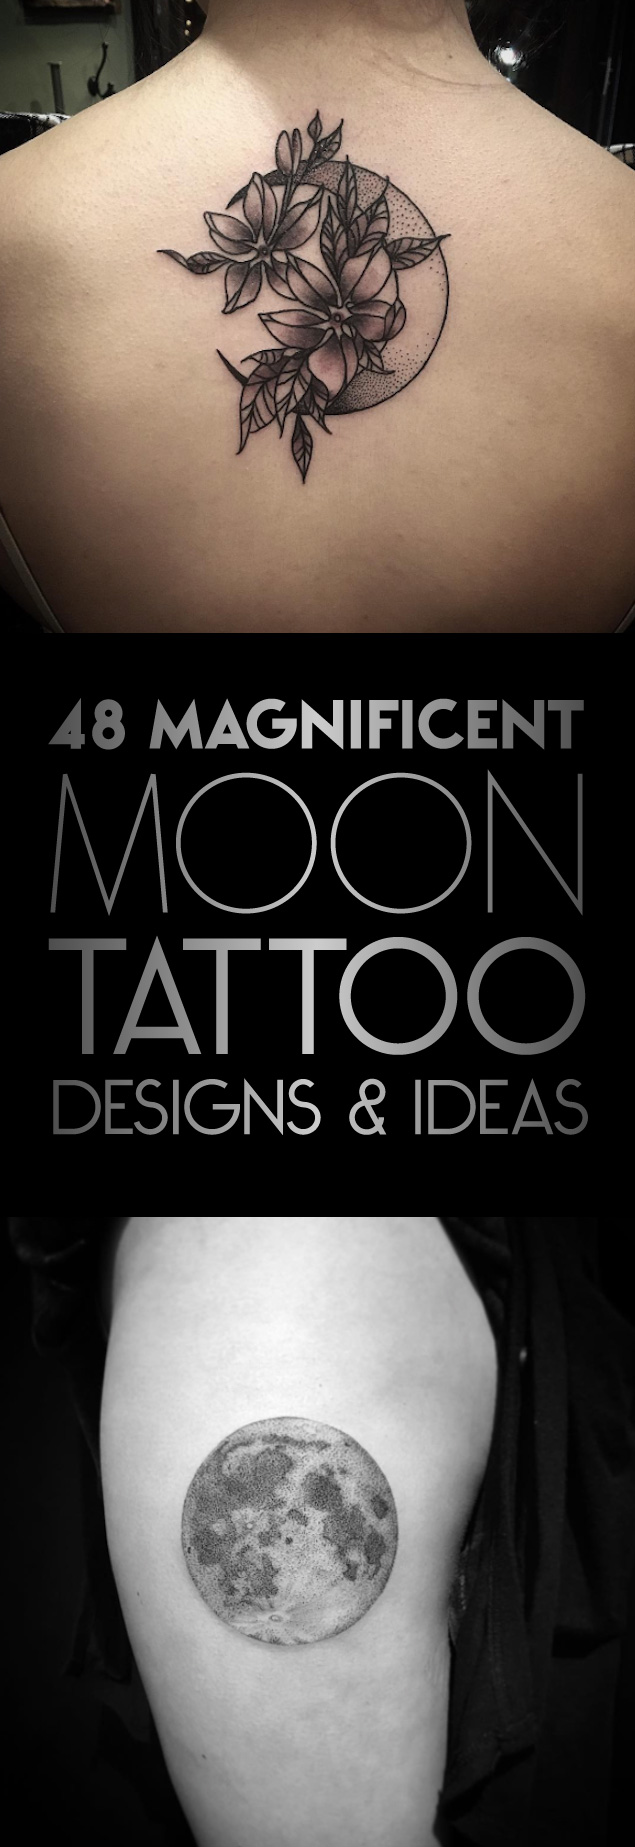 TattooBlend-Moon-Tattoo-Designs-Ideas